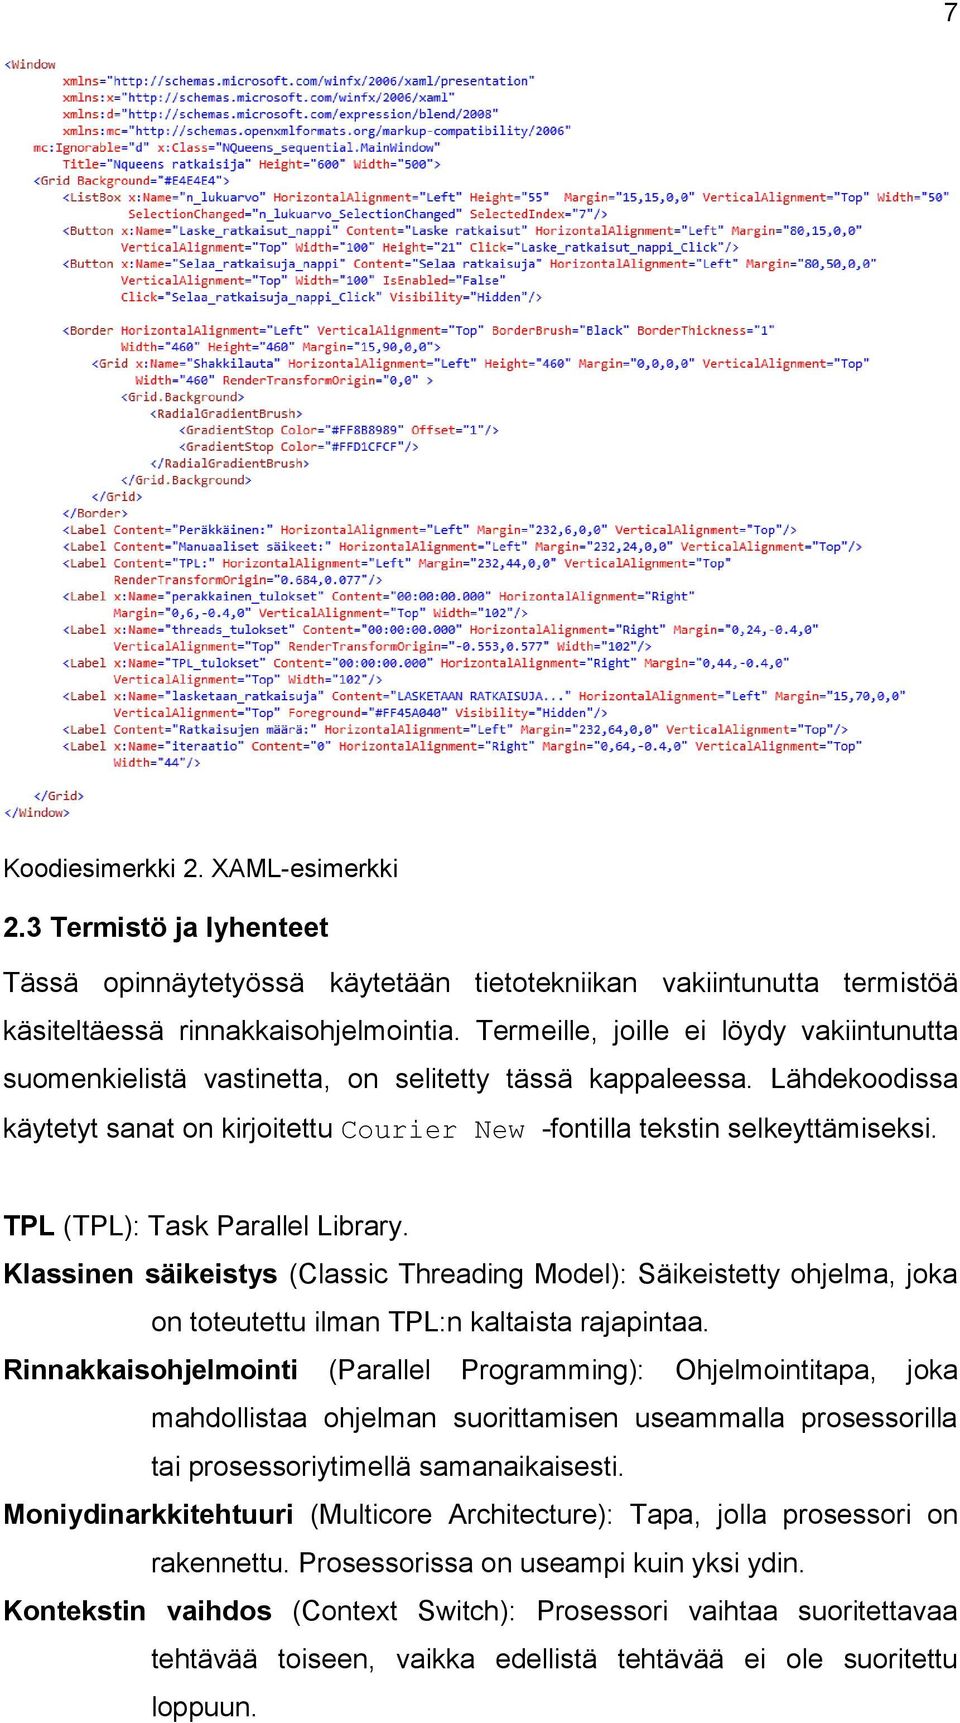 TPL (TPL): Task Parallel Library. Klassinen säikeistys (Classic Threading Model): Säikeistetty ohjelma, joka on toteutettu ilman TPL:n kaltaista rajapintaa.